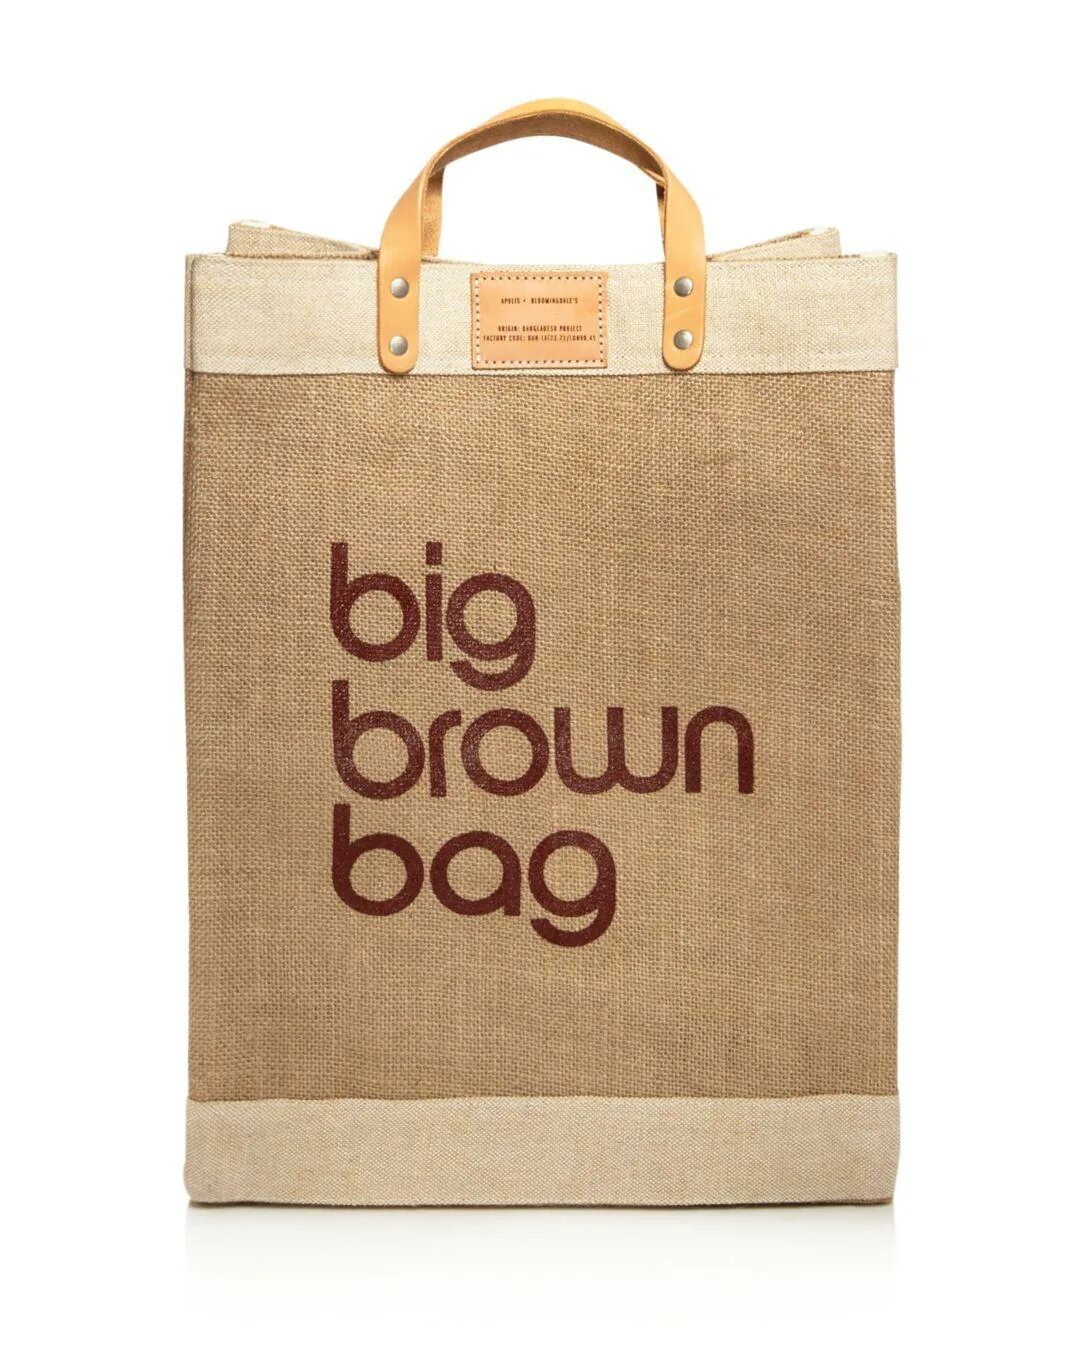 Brown bag. Big Brown Bag. Бренд Tom Brown сумки. Brown Bag logo.